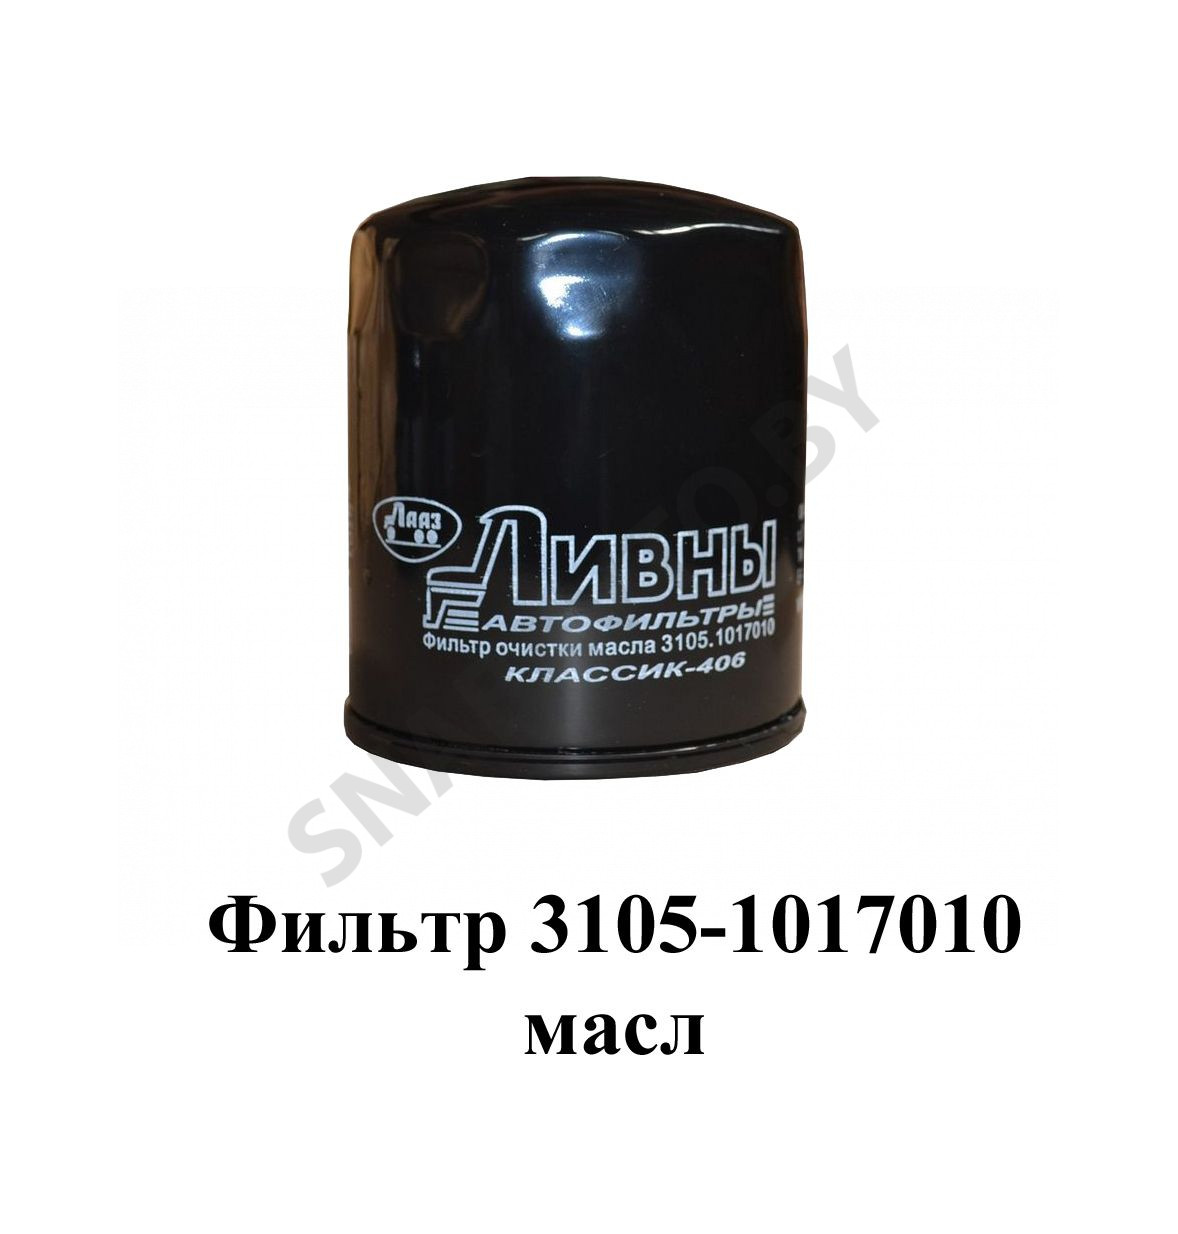 Фильтр очистки масла и его сменный элемент, РФ 3105-1017010, RSTA